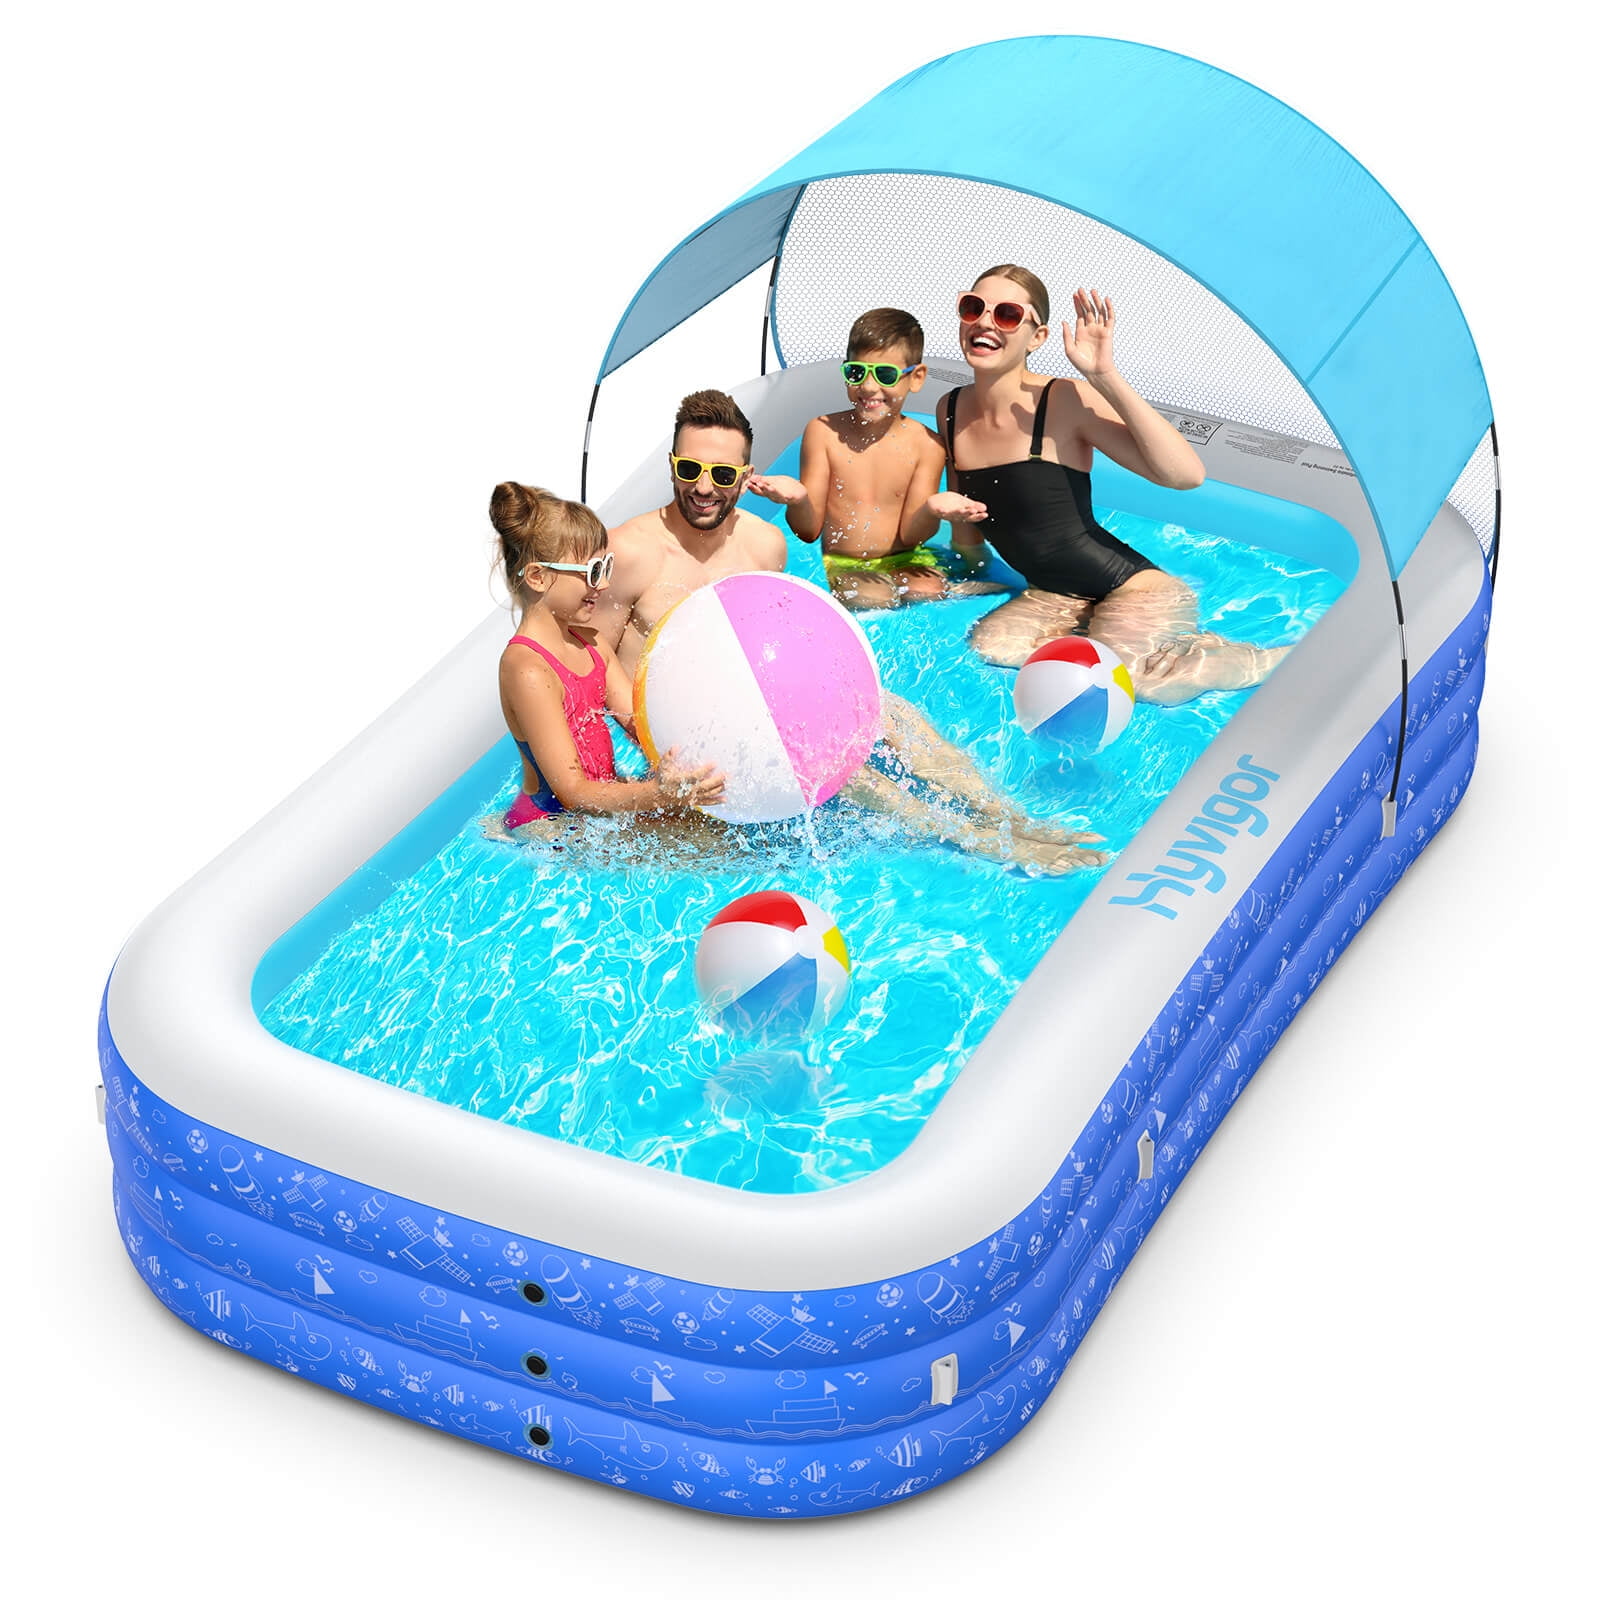 POOLPURE Inflatable Kiddie Swimming Pool Pool with Sprinkler 118X 72 X 20 F 